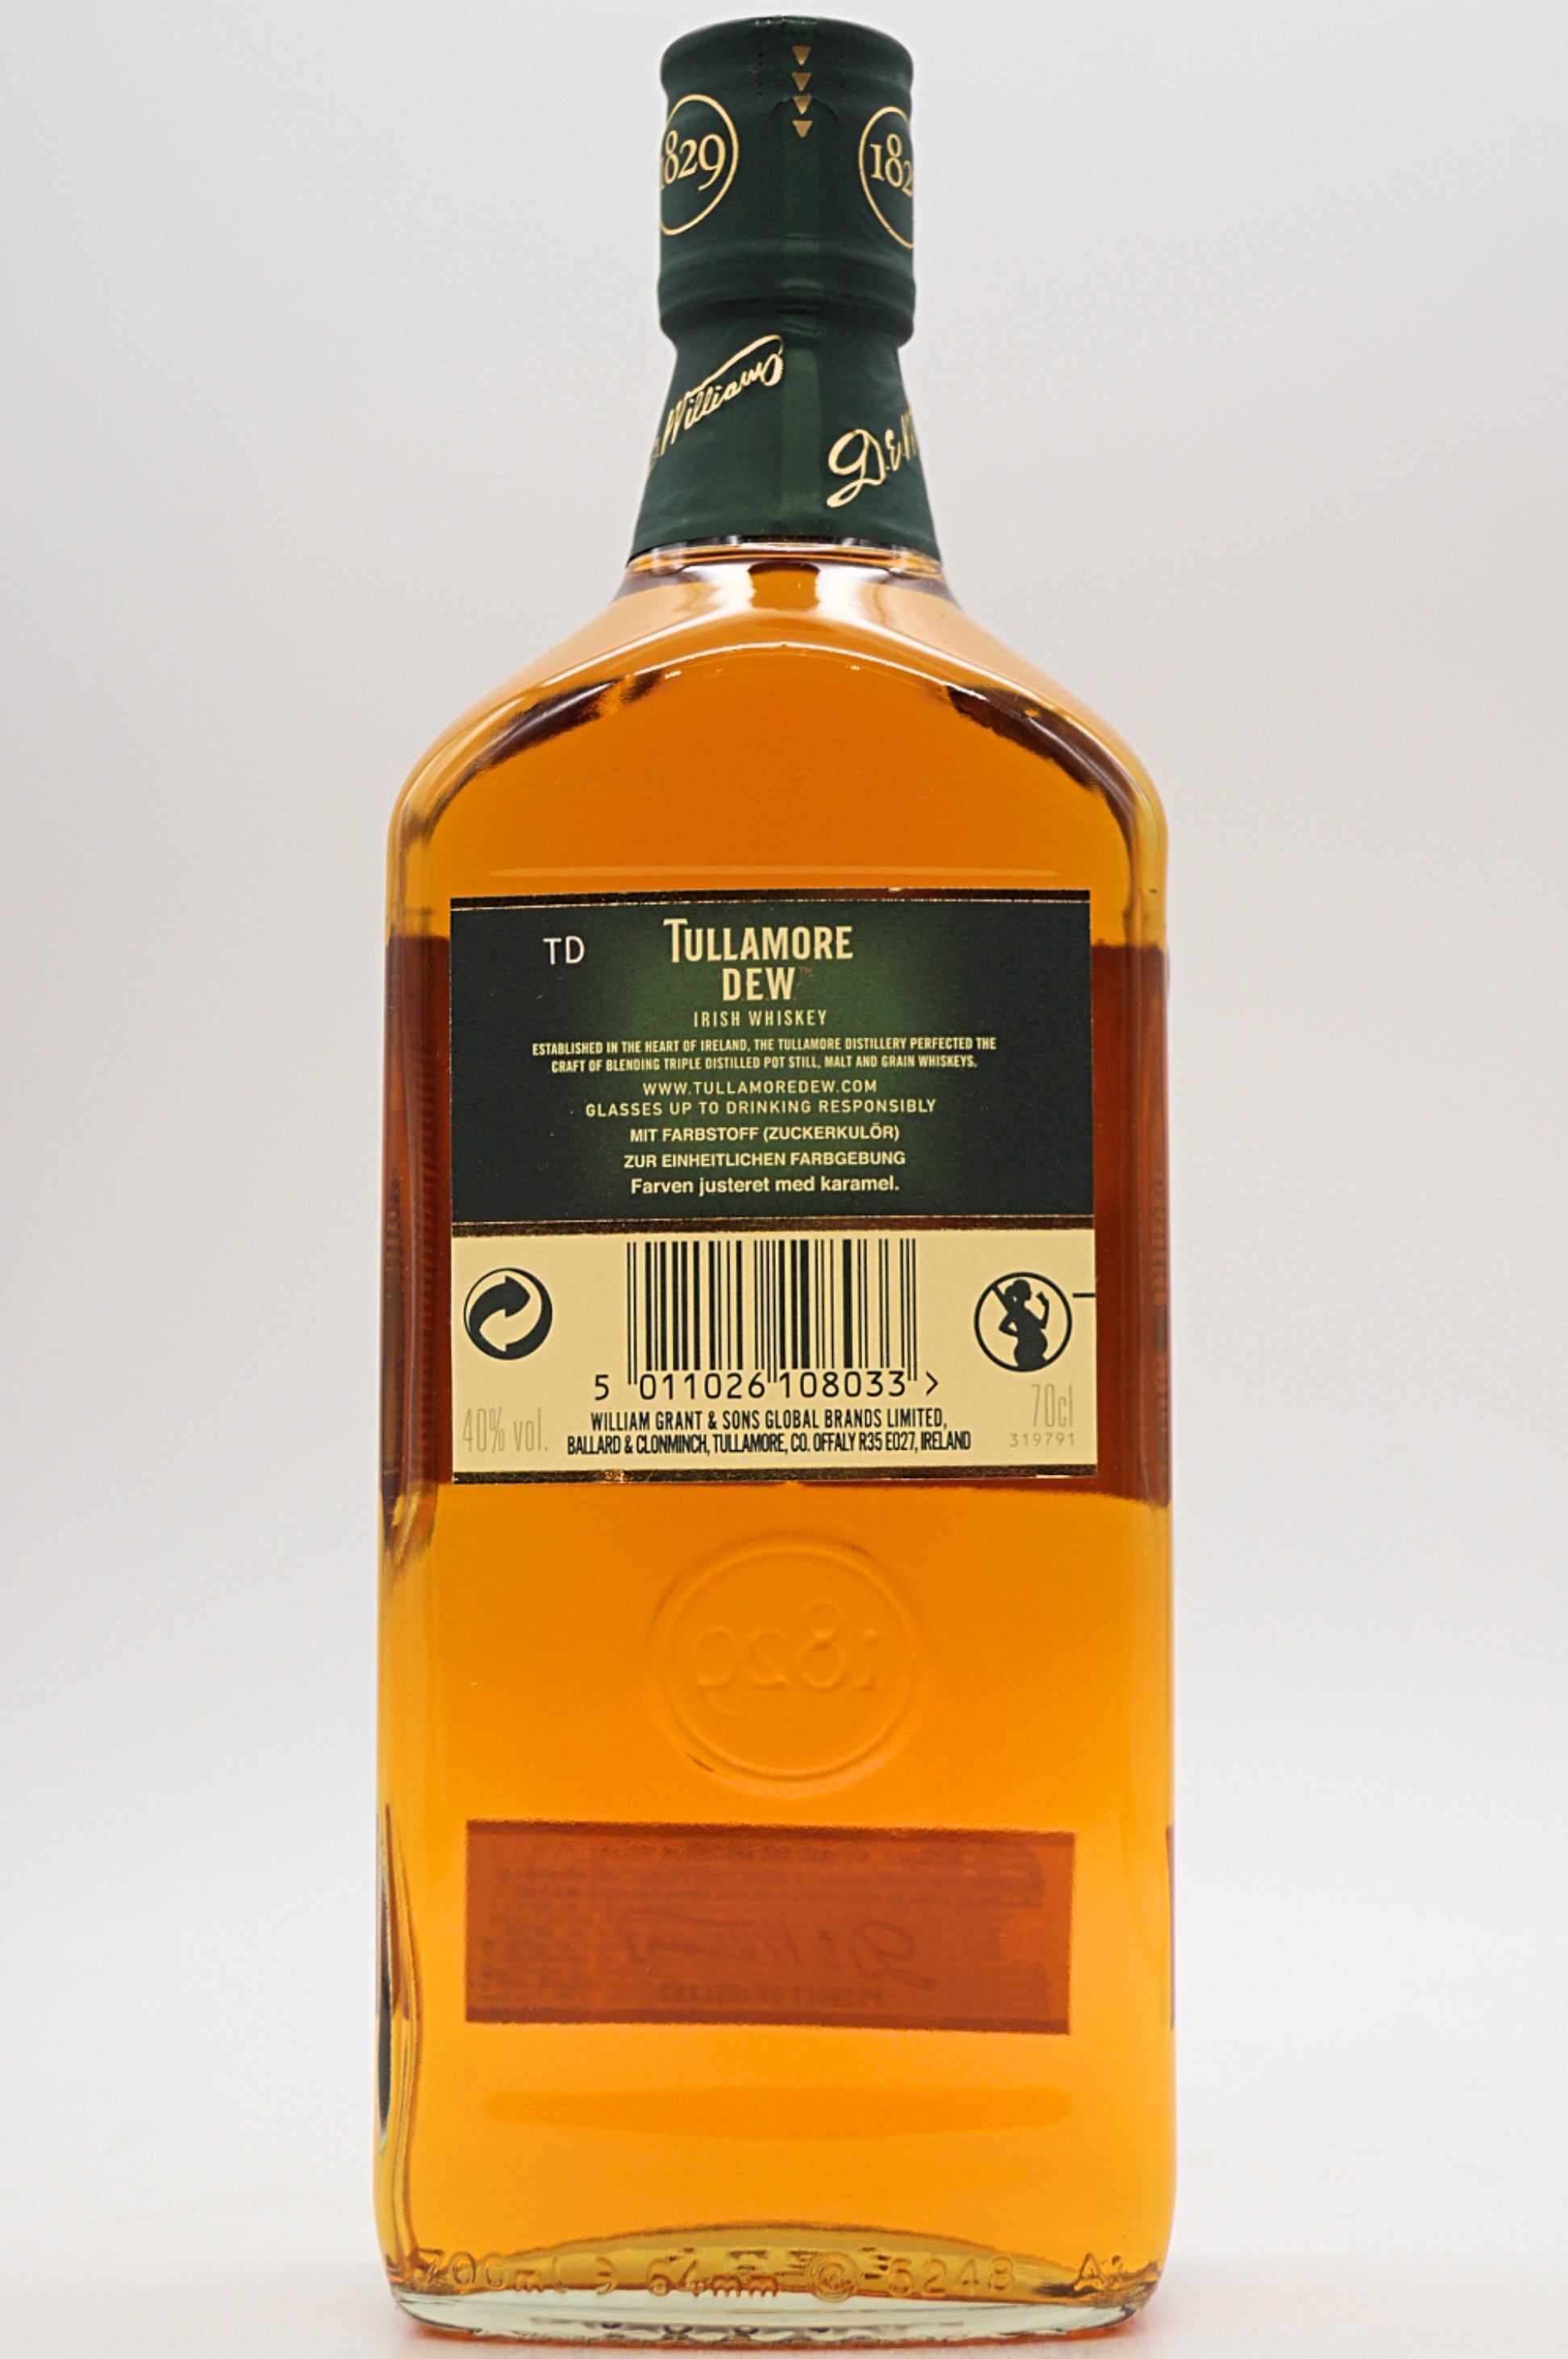 The Legendary Irish Whiskey